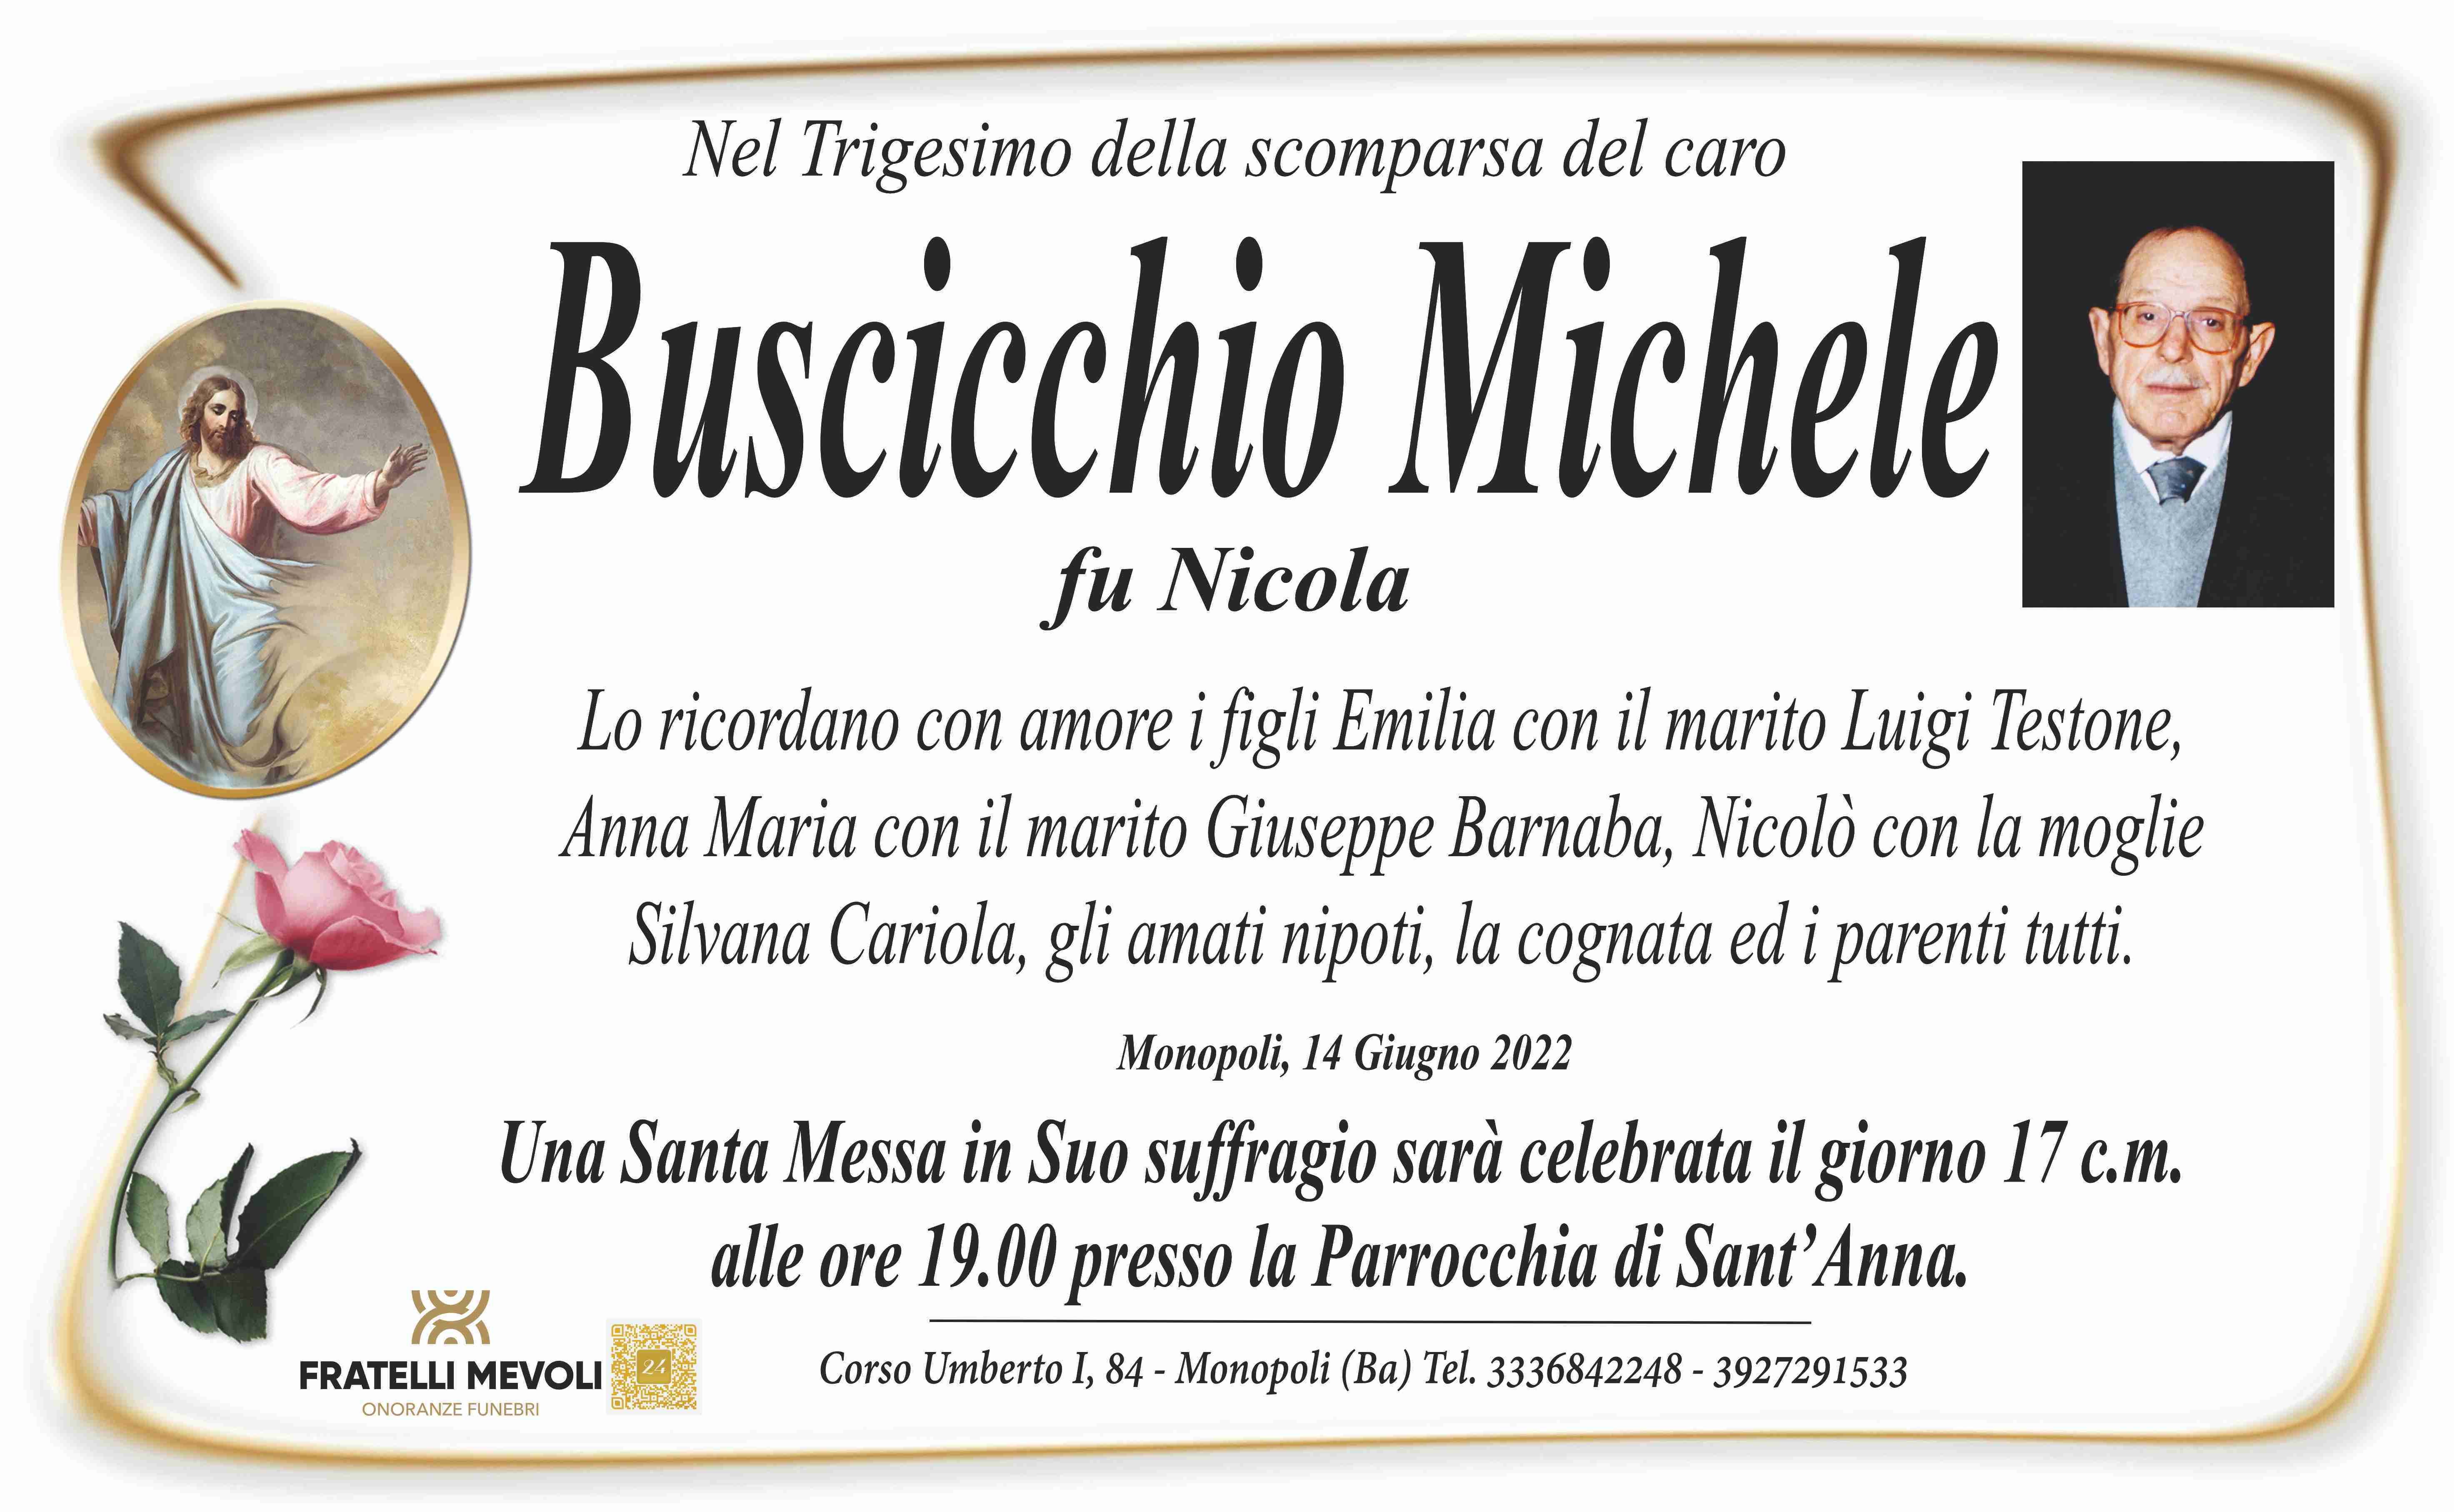 Michele Buscicchio